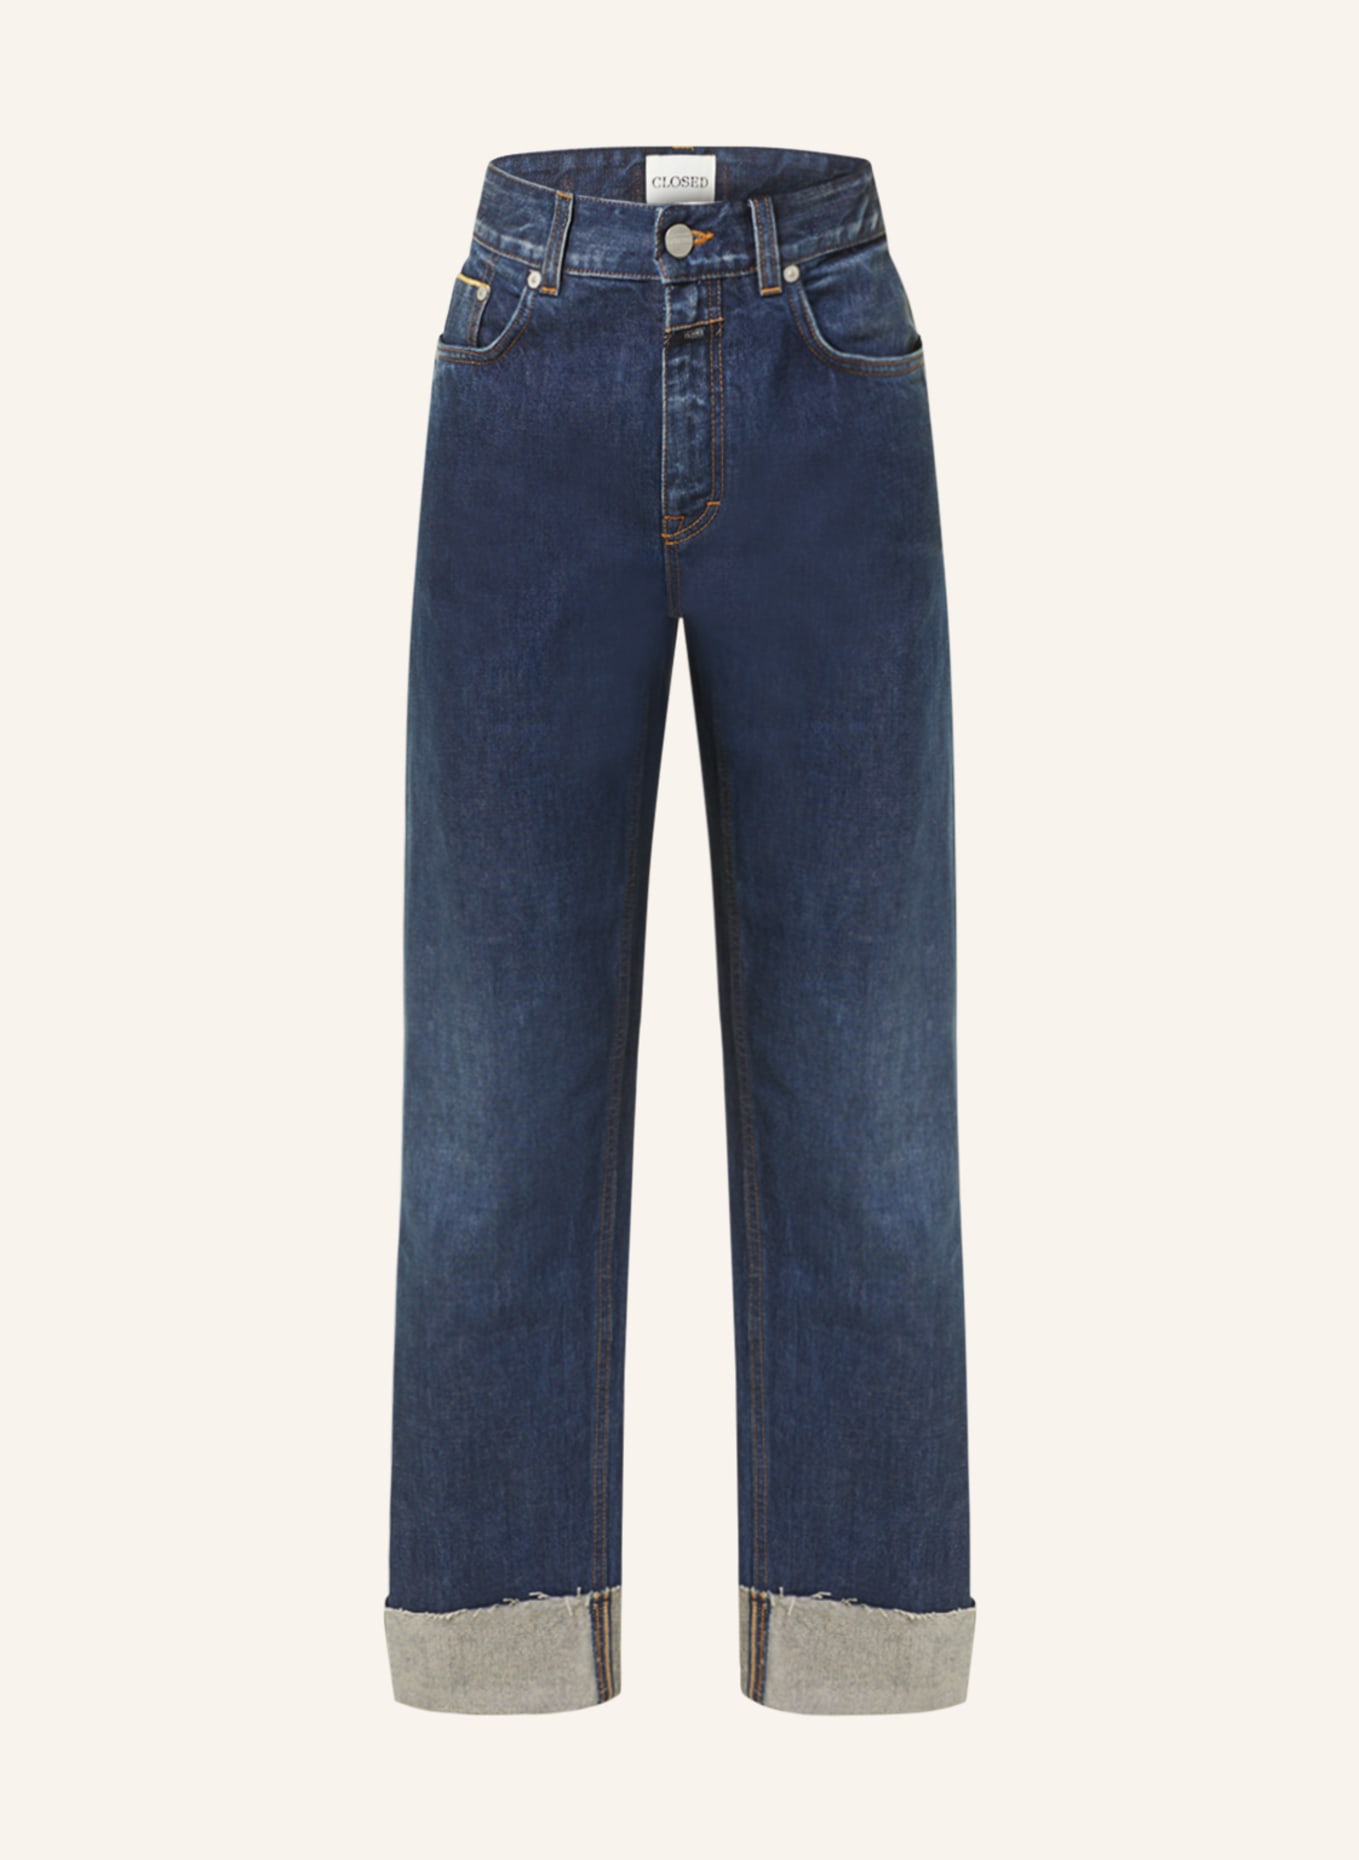 CLOSED Jeans MILO, Farbe: DBL DARK BLUE (Bild 1)